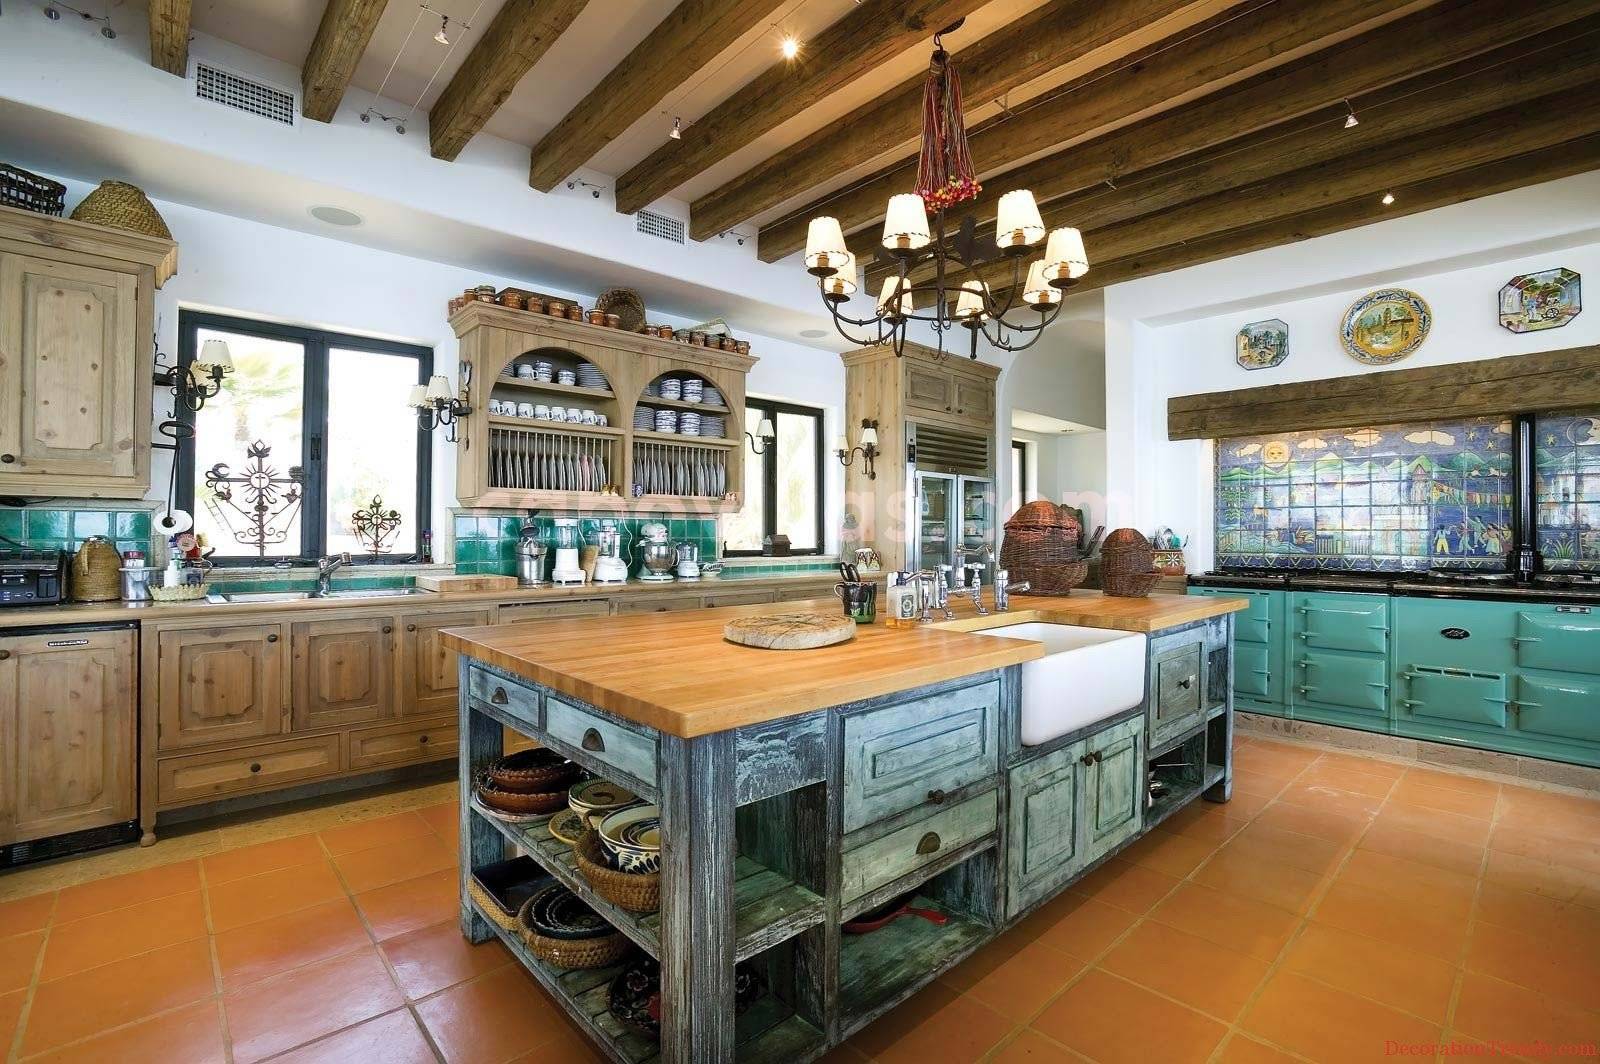 Испанская плитка для кухни: керамическая настенная плитка из испании фирмы damasco в стиле прованс